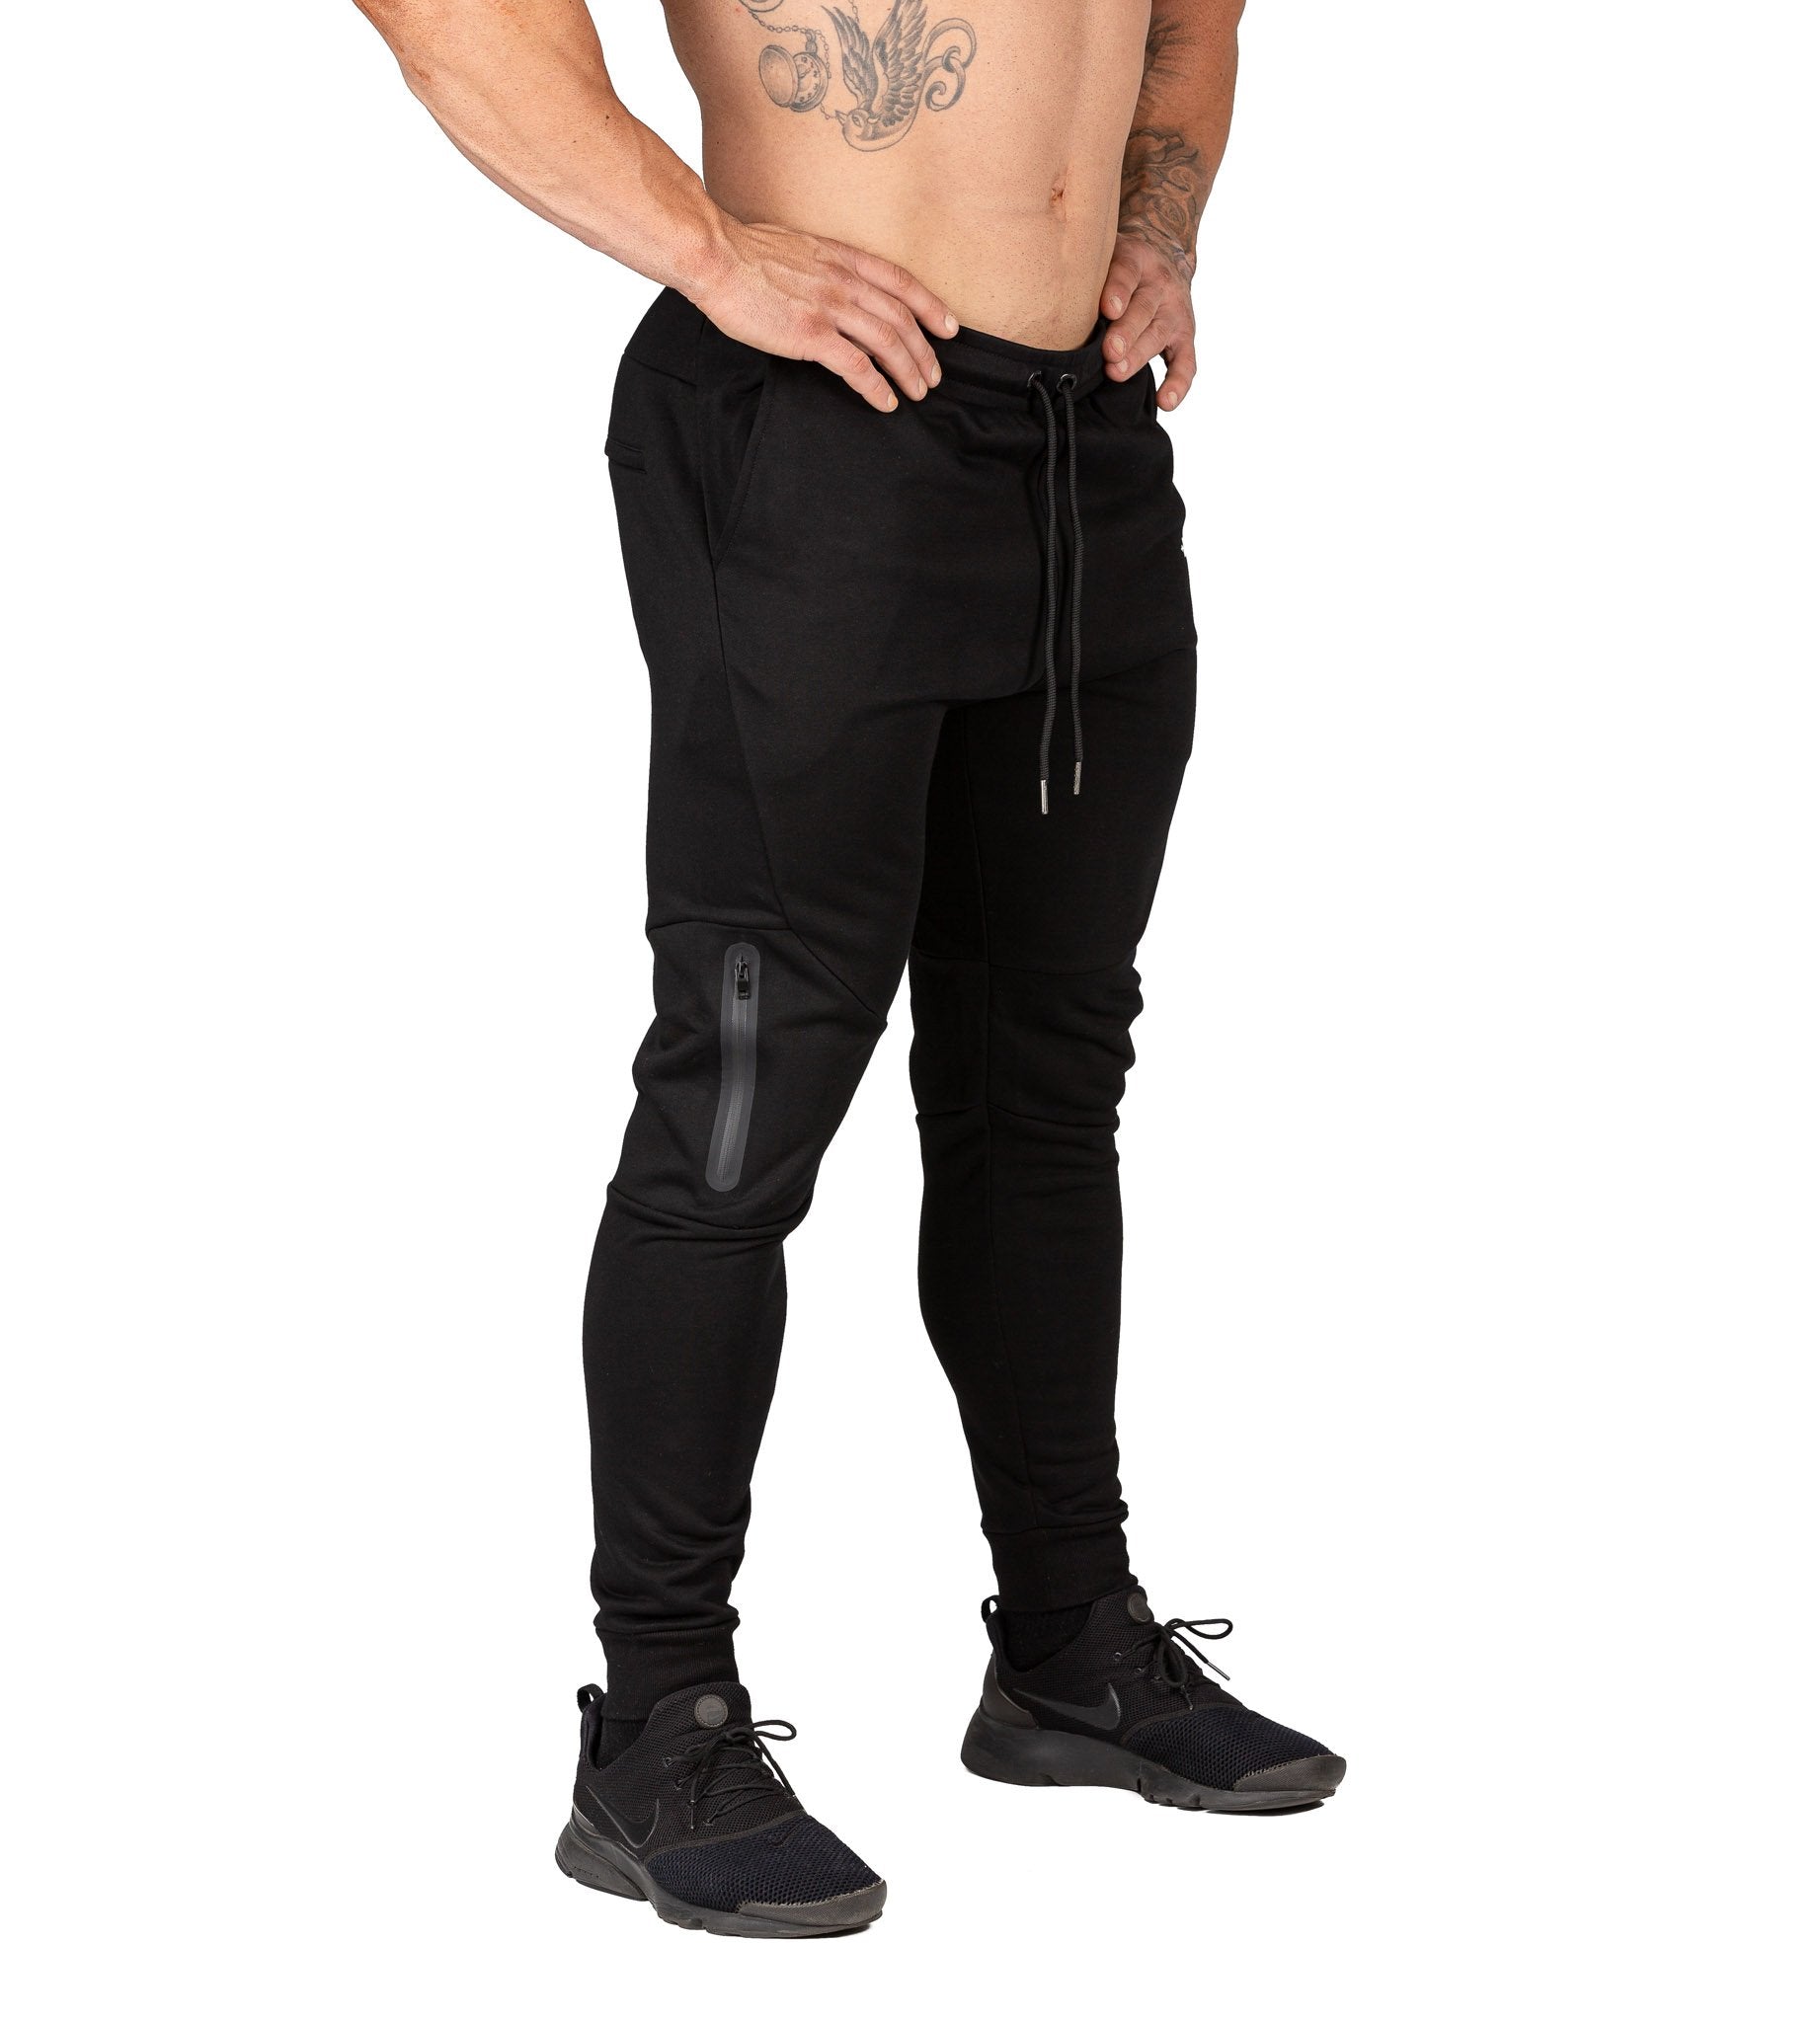 Fusion Gym Pants II - Flux Black